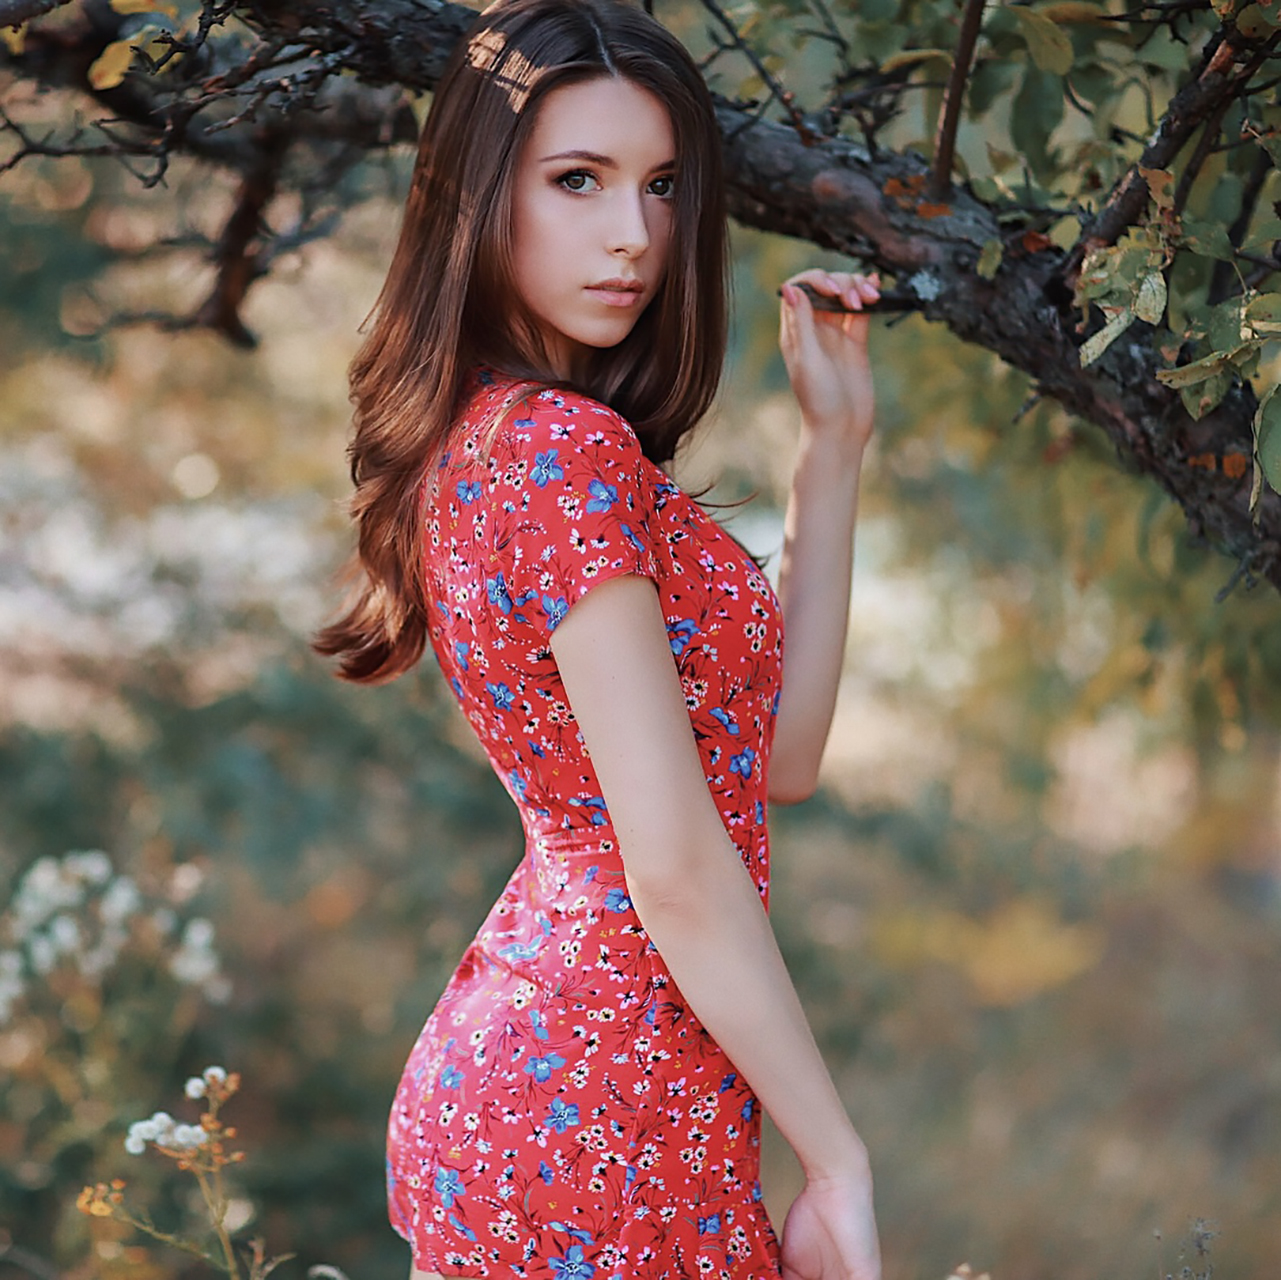 Viktoria Makarenko Viki Virgo Women Brunette Long Hair Wavy Hair Flower Dress Nature Branch Red Clot 1281x1280